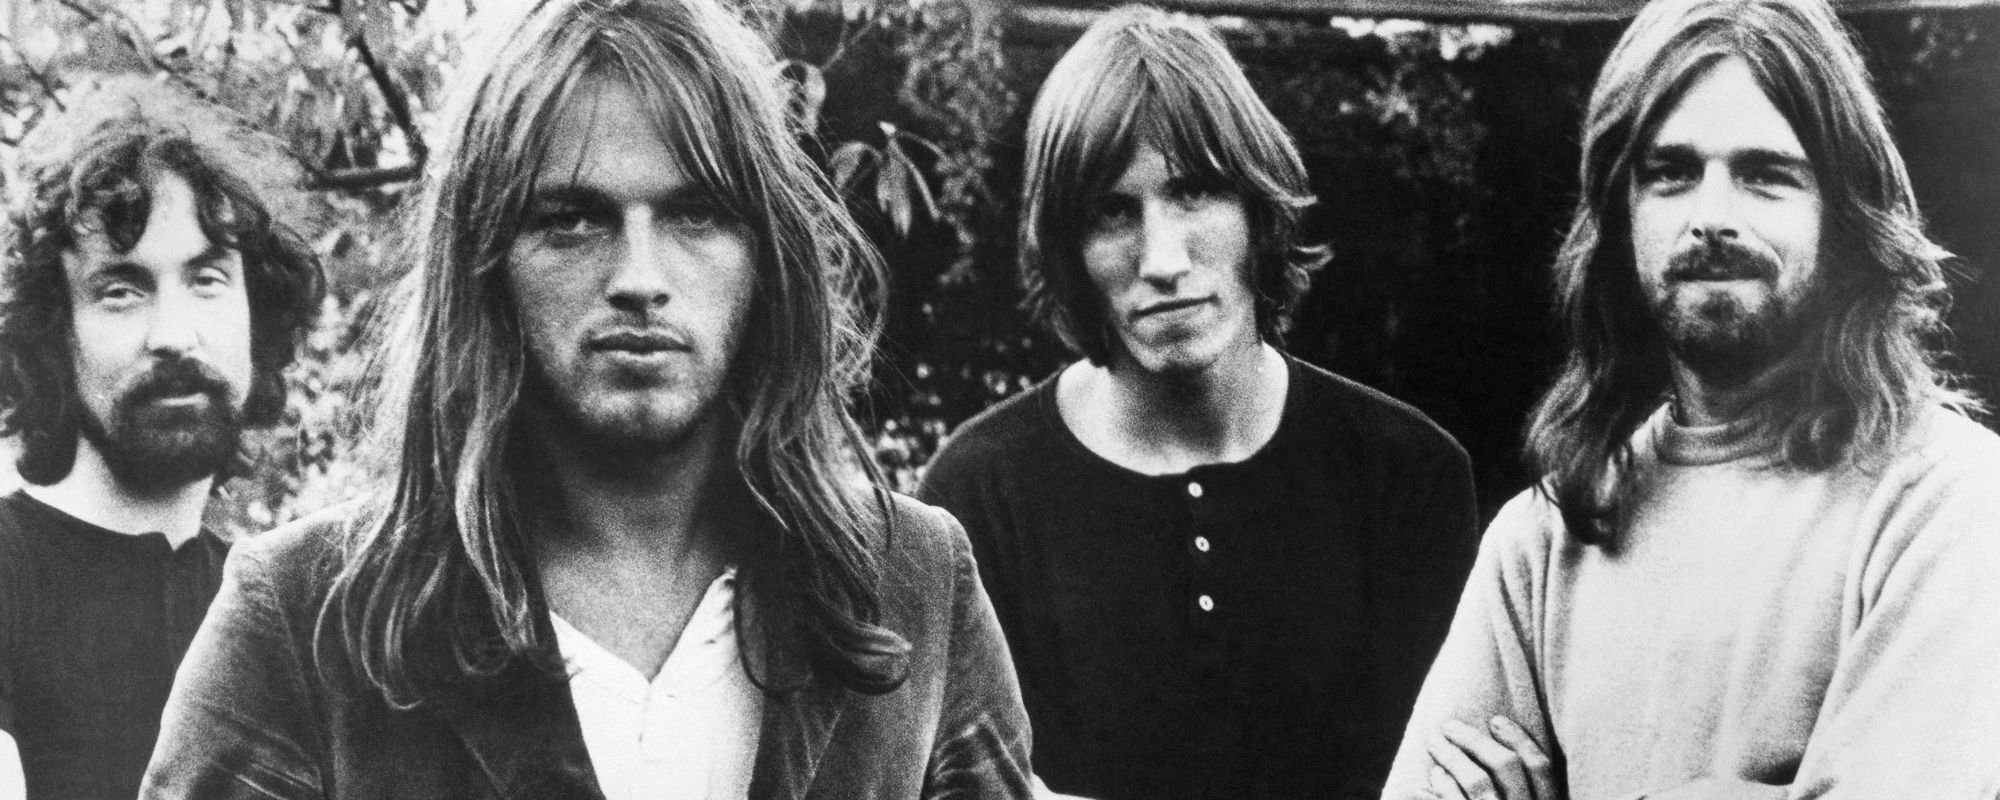 3 Eternal Classic Rock Songs by Pink Floyd